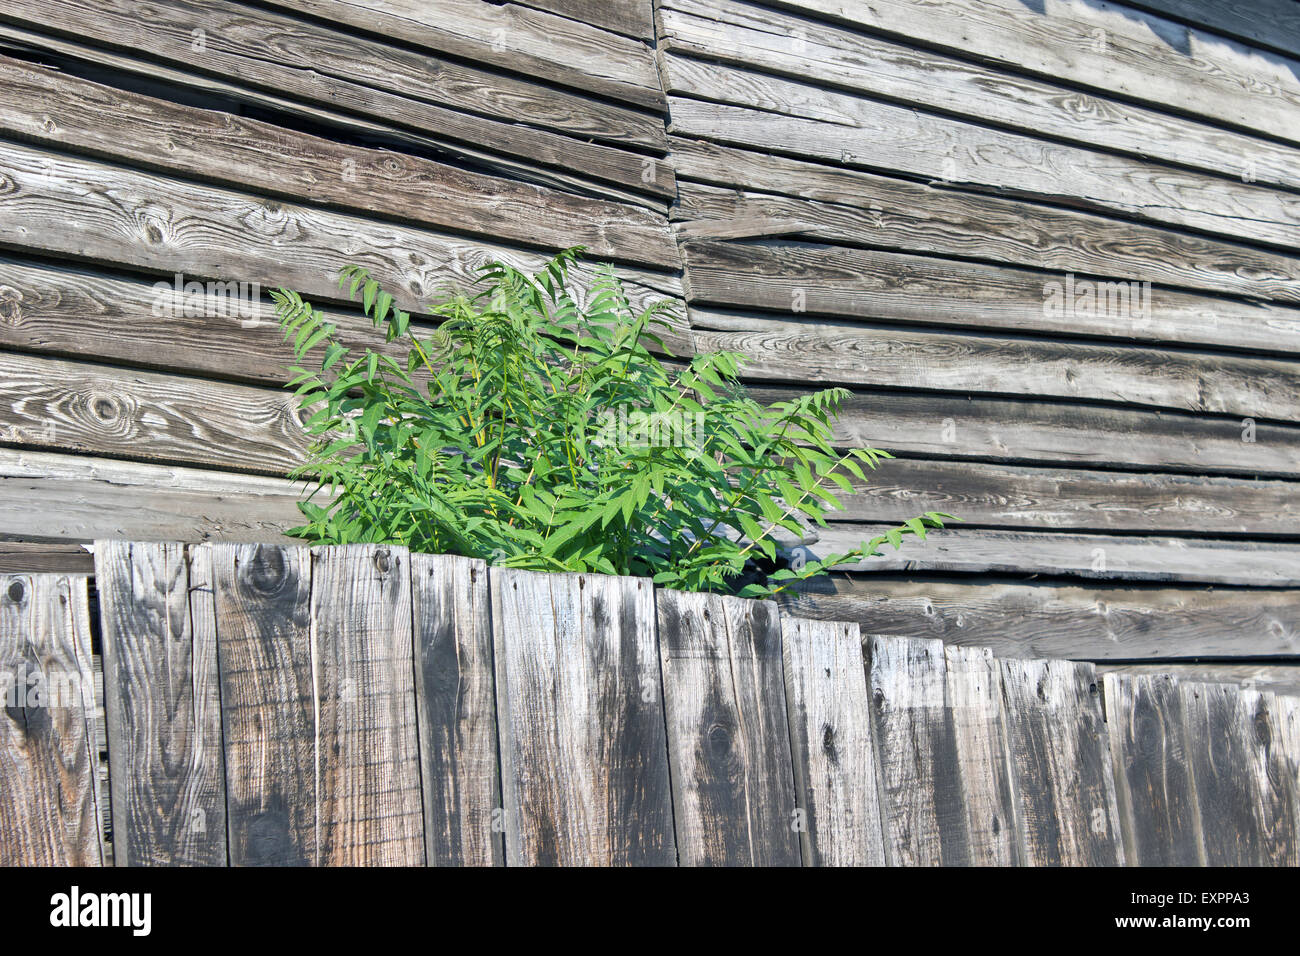 Bush verde creciendo sobre tablones de madera vieja Foto de stock